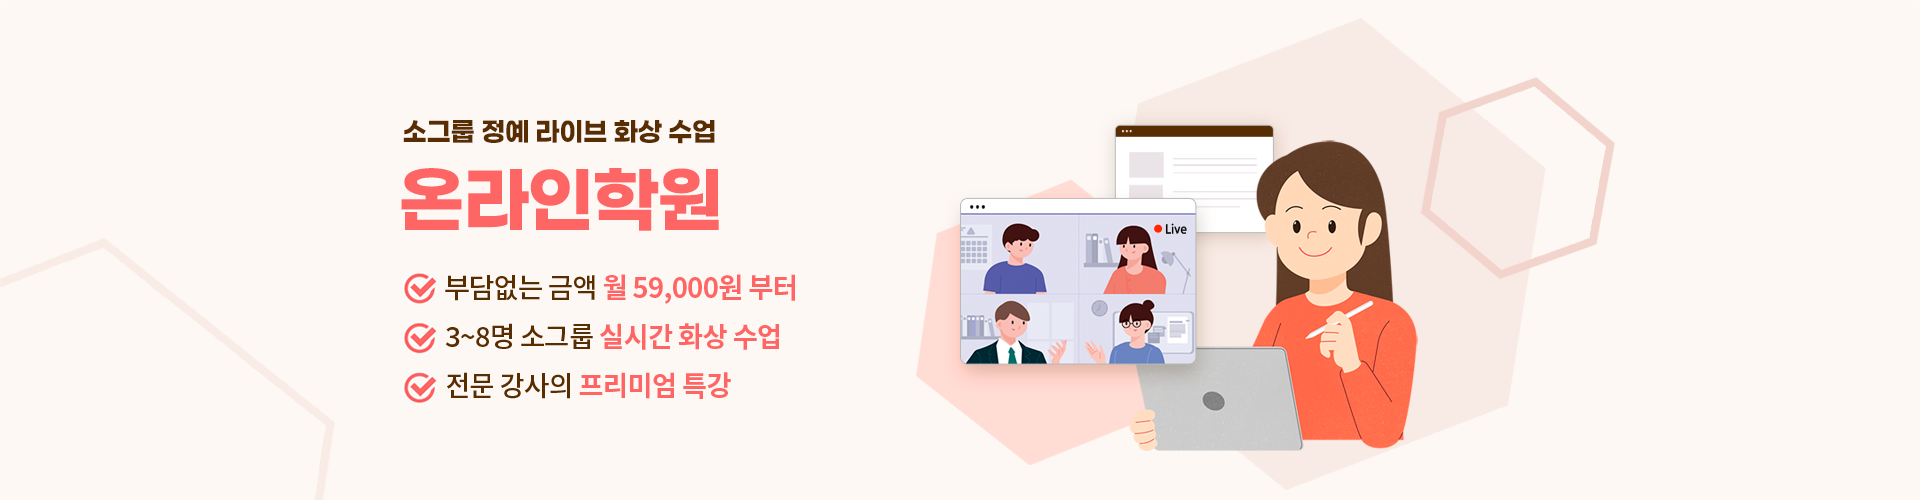 소그룹 프리미엄 라이브 화상 수업 온라인 학원, 그룹 과외